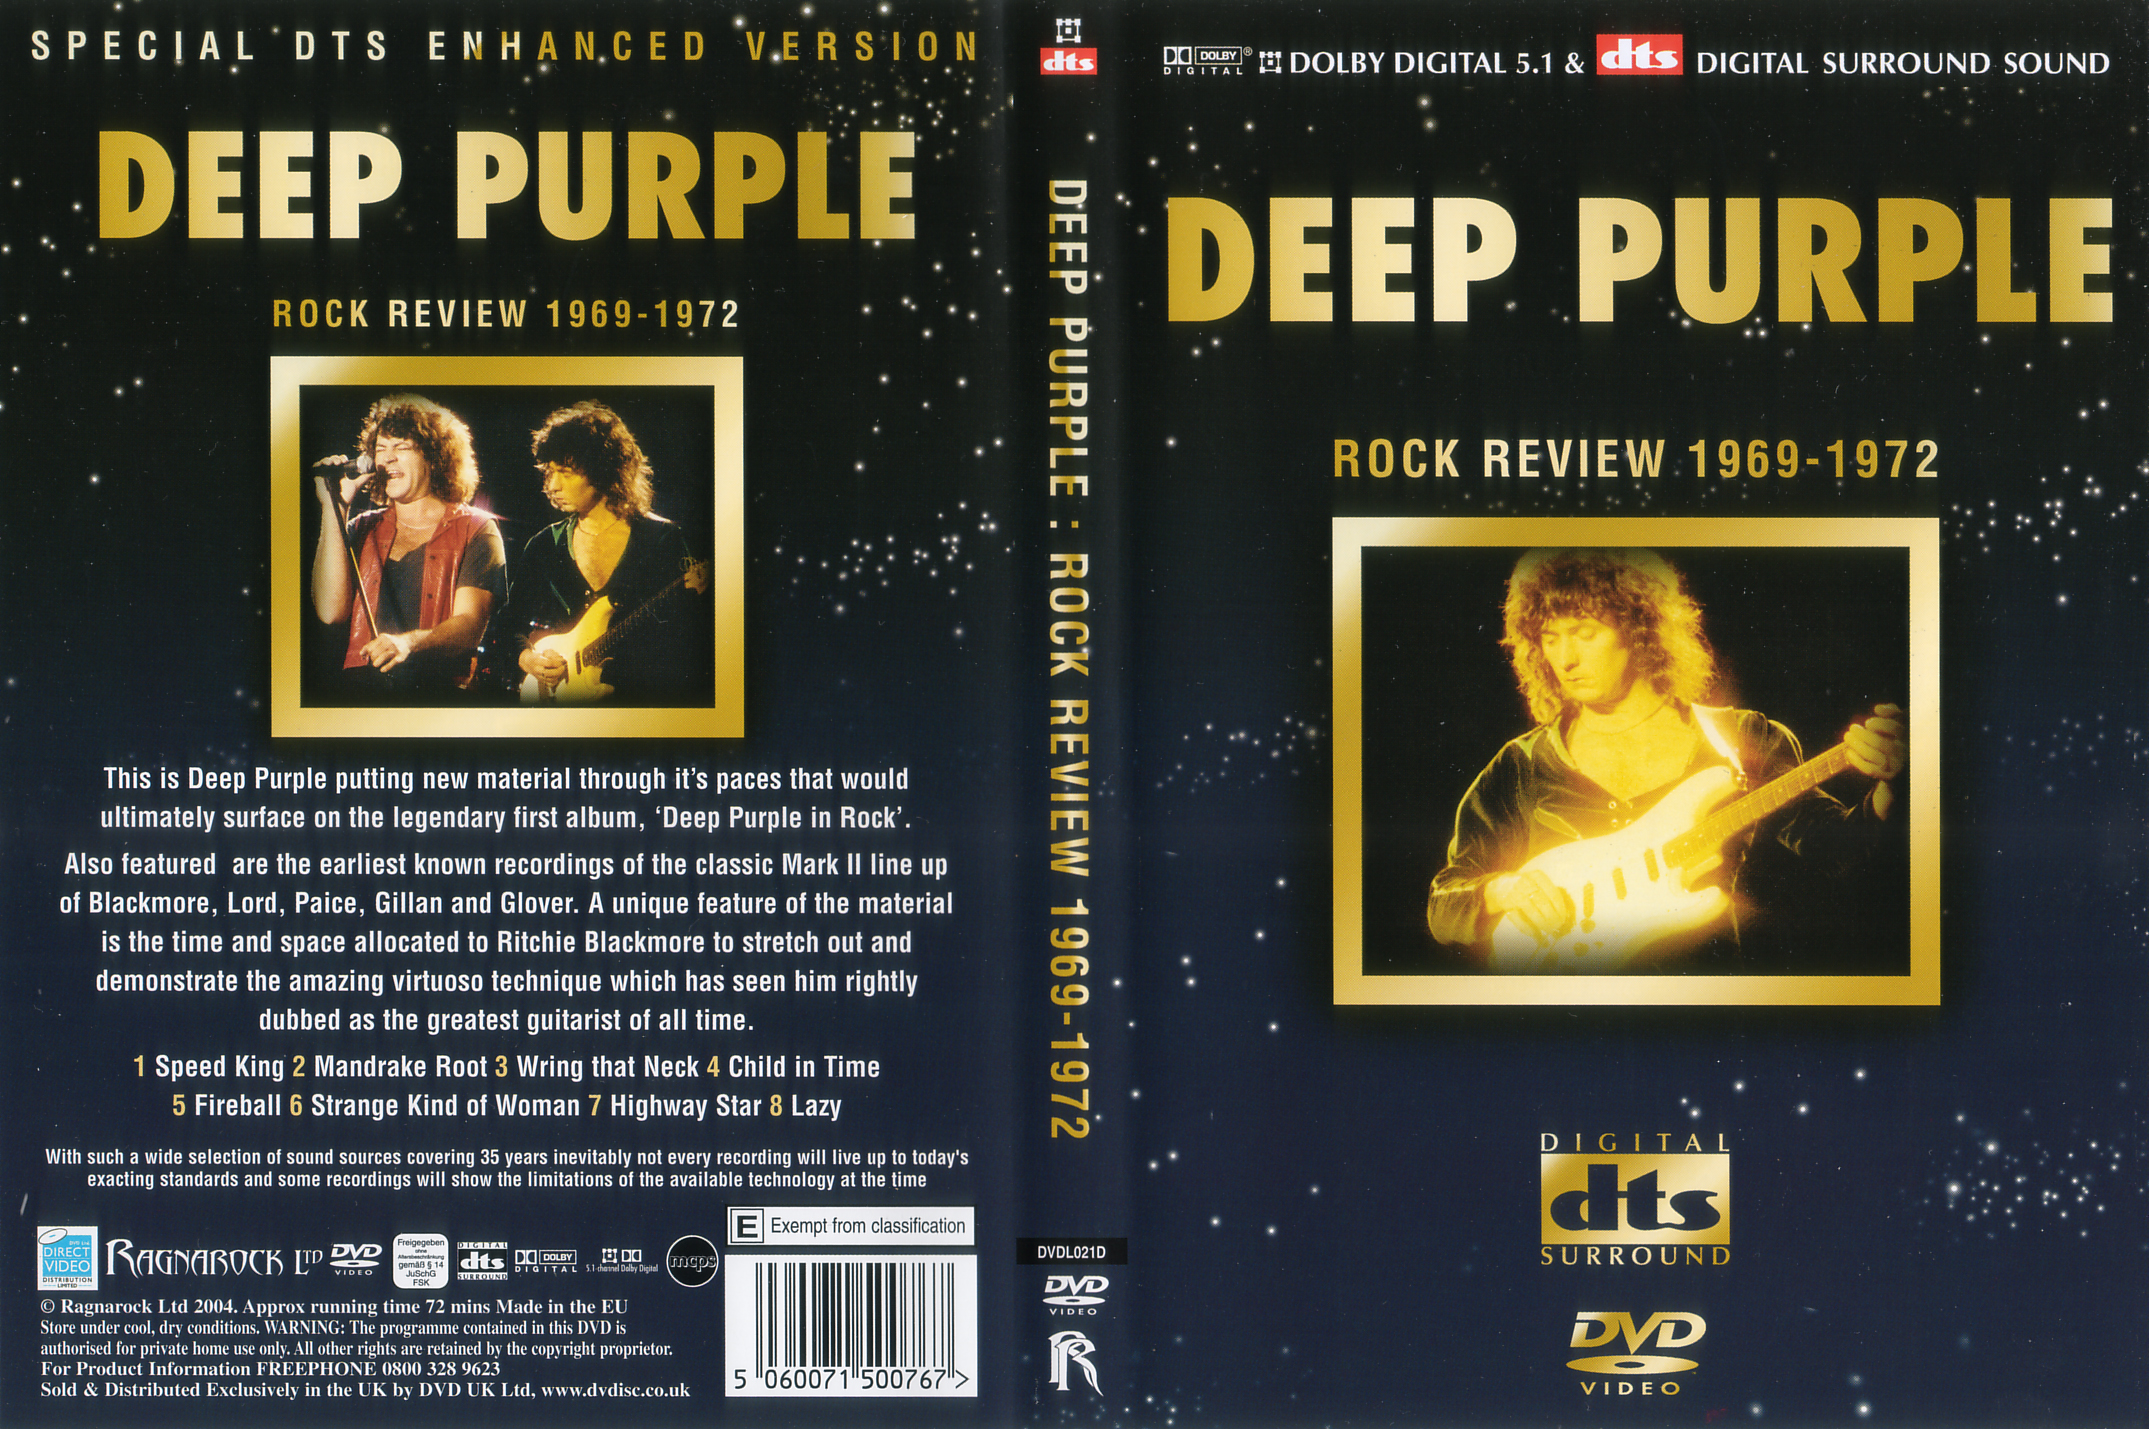 Jaquette DVD Deep Purple Rock review 1969-1972